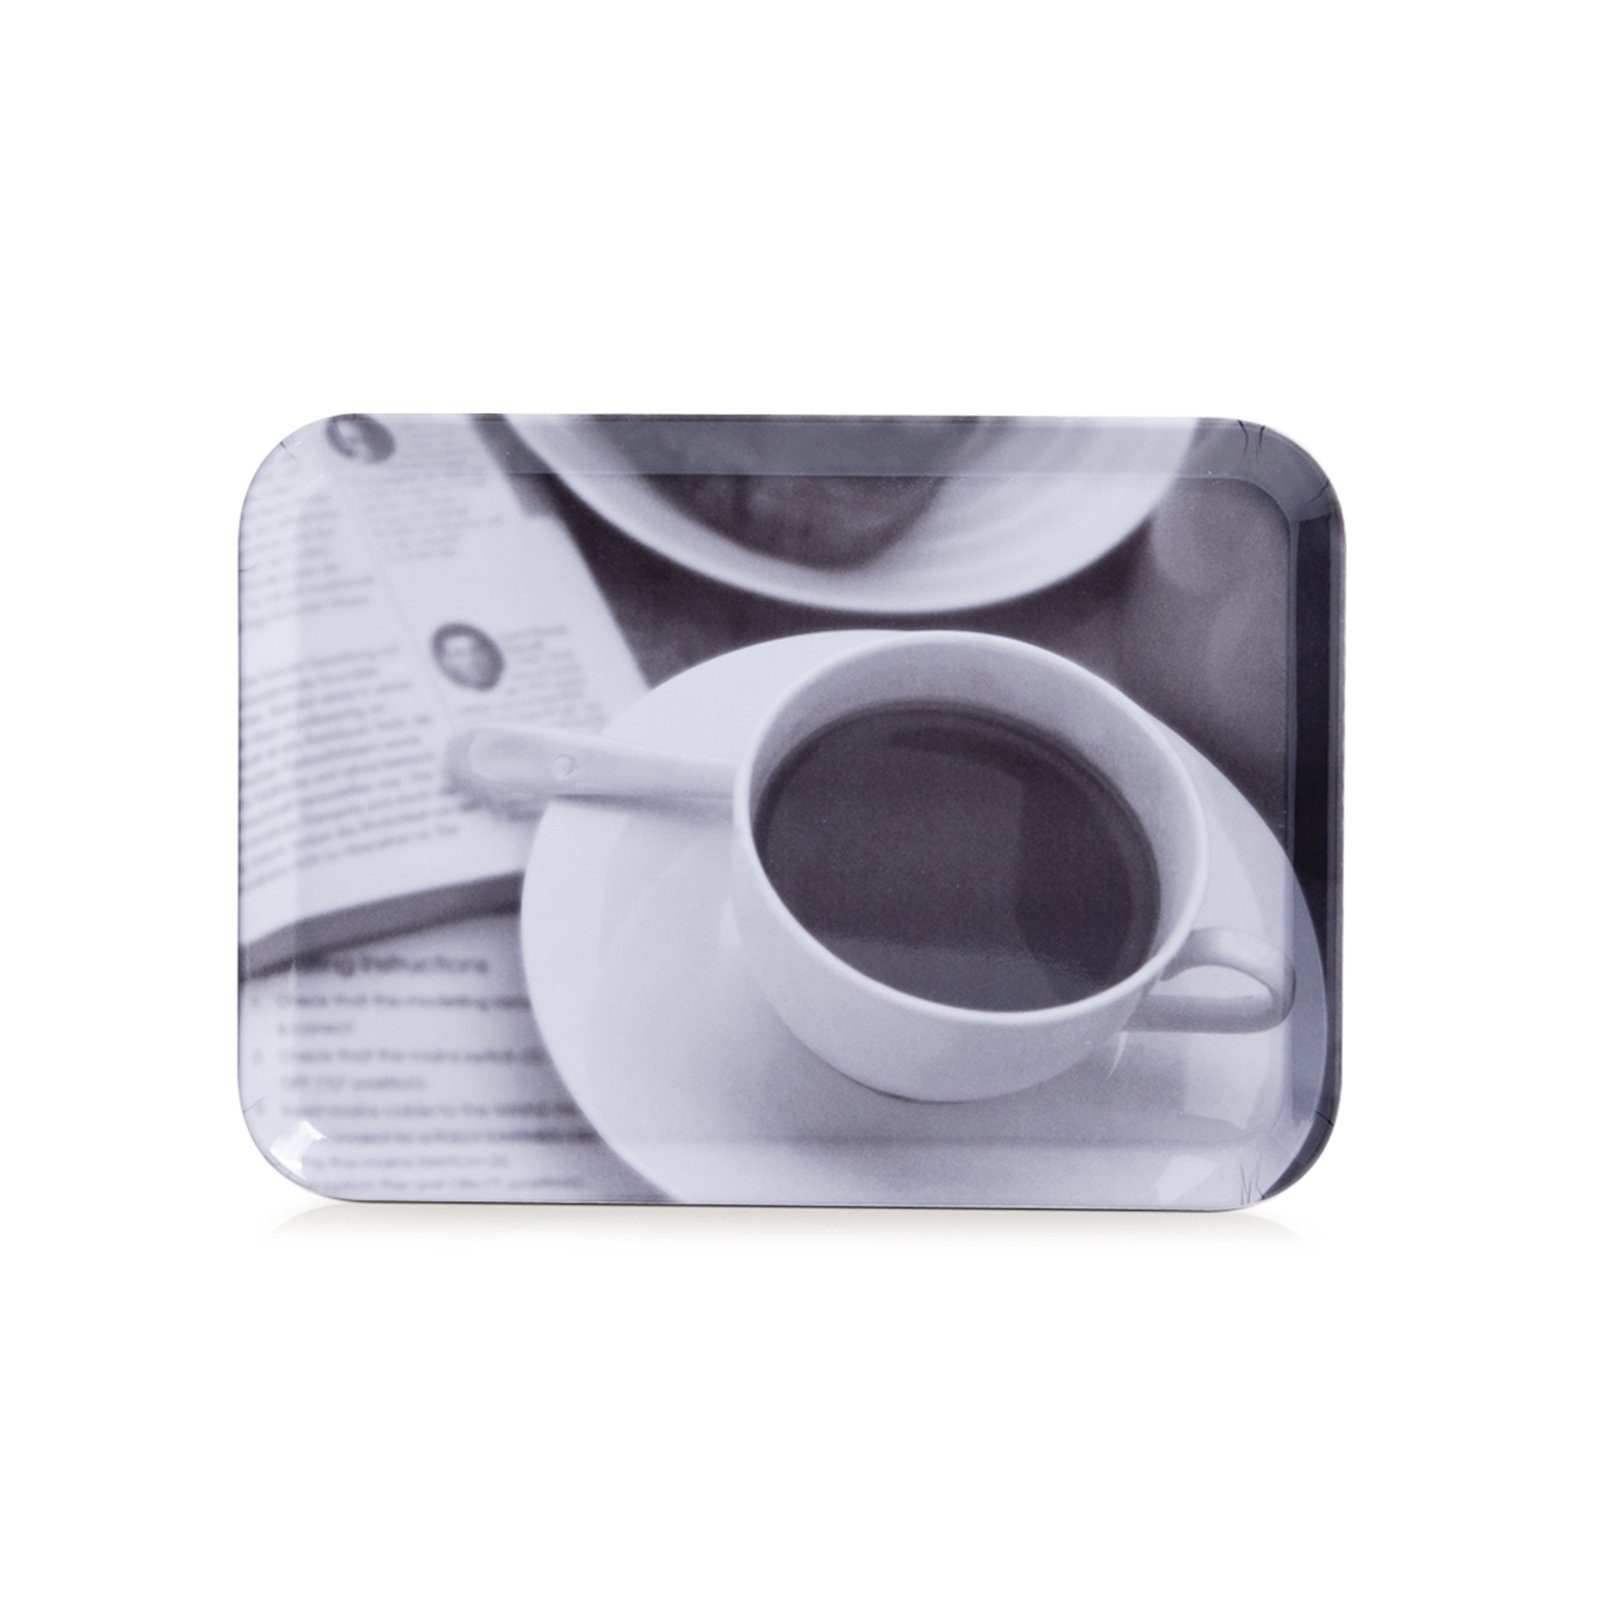 Kaffee-Design, Tablett Serviertablett (1-tlg) Melamin, Neuetischkultur